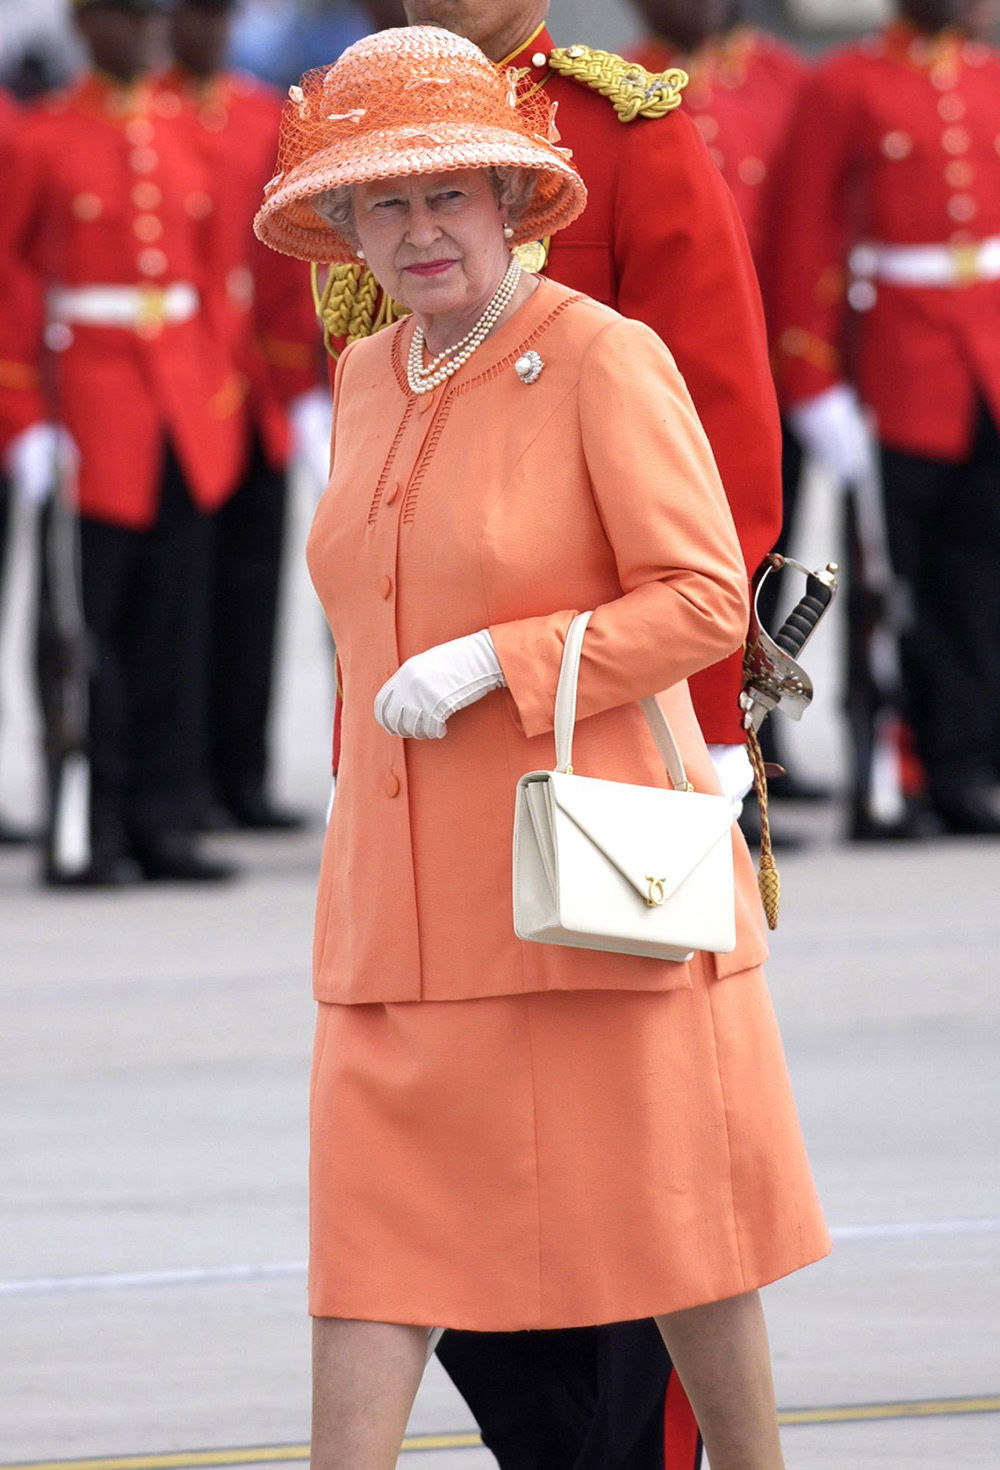 Nữ hoàng Elizabeth II và túi xách Launer